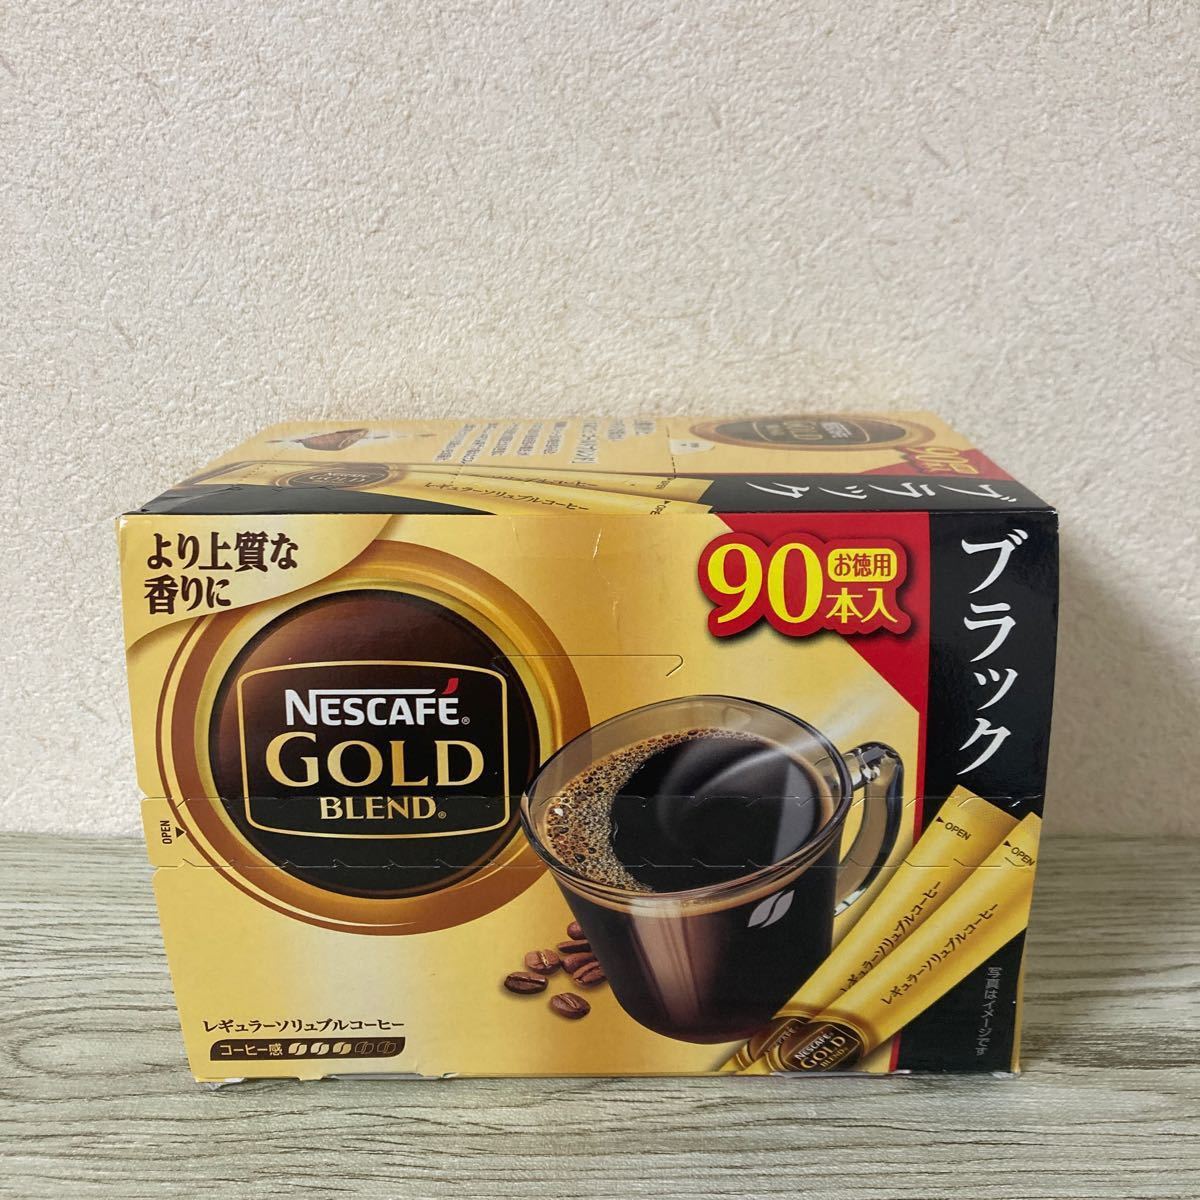 ネスカフェ ゴールドブレンド スティック ブラック(90本入)【ネスカフェ(NESCAFE)】[コーヒー]